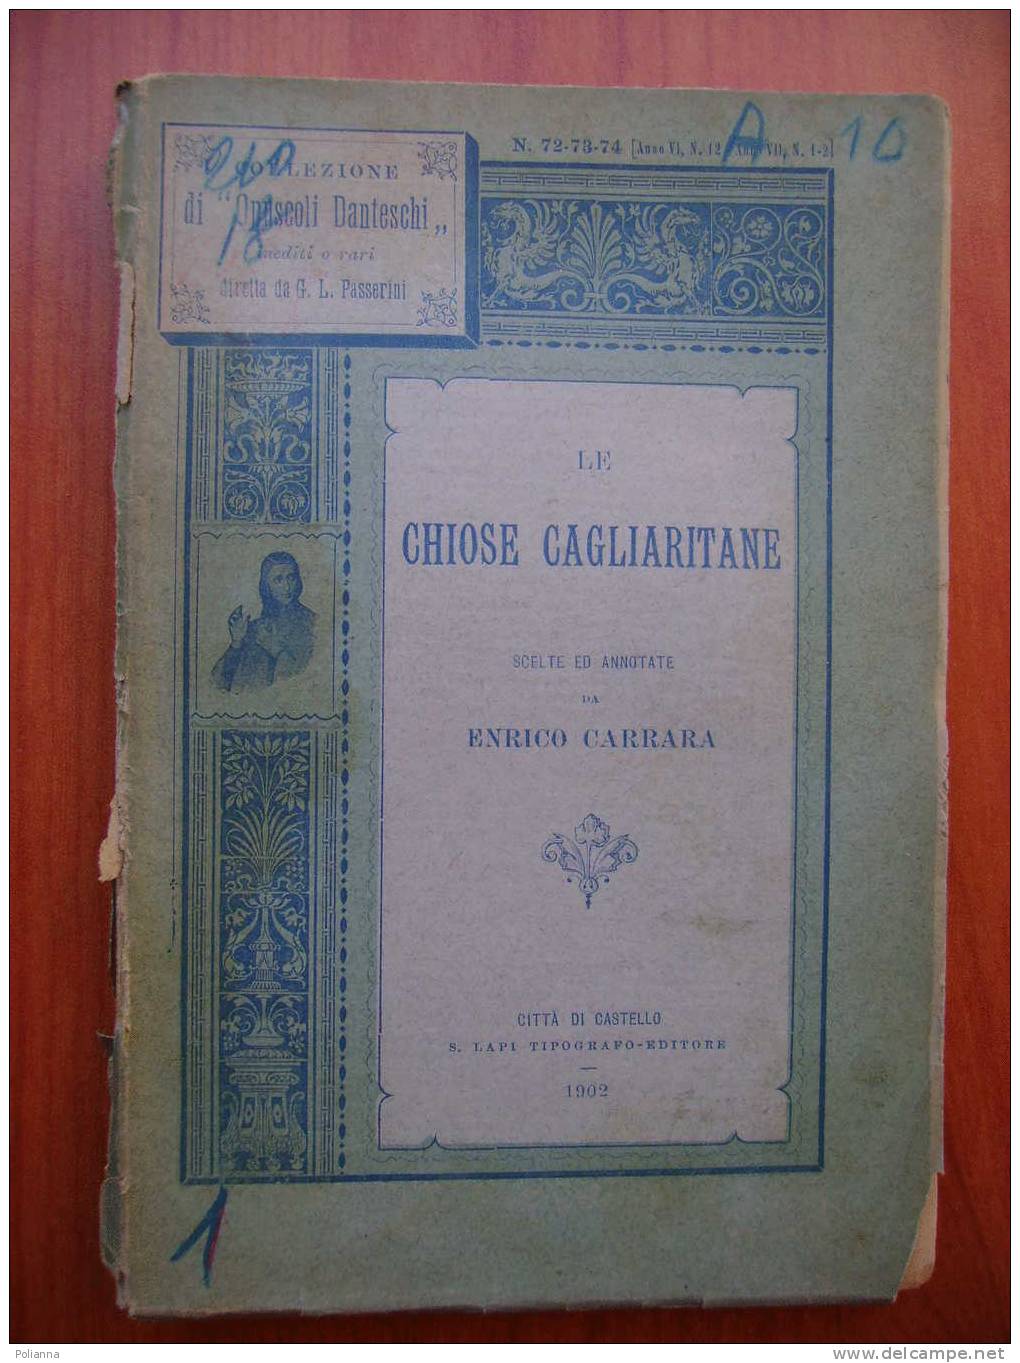 PX/37 Opuscoli Danteschi-LE CHIOSE CAGLIARITANE Carrara 1902 - Anciens